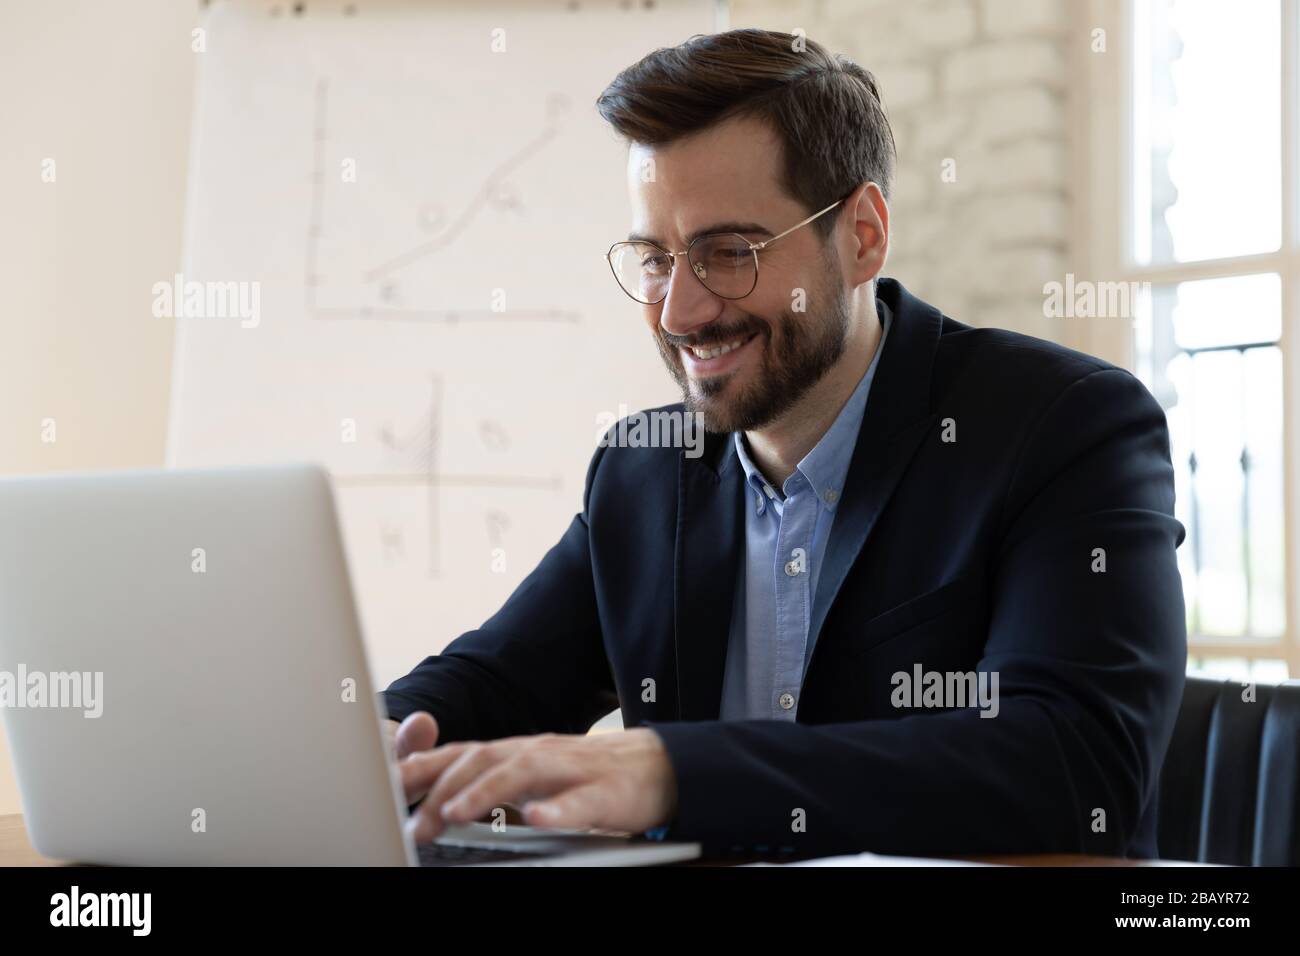 Lächelnder Geschäftsmann, der auf einem Laptop tippt und am Arbeitsplatz sitzt Stockfoto